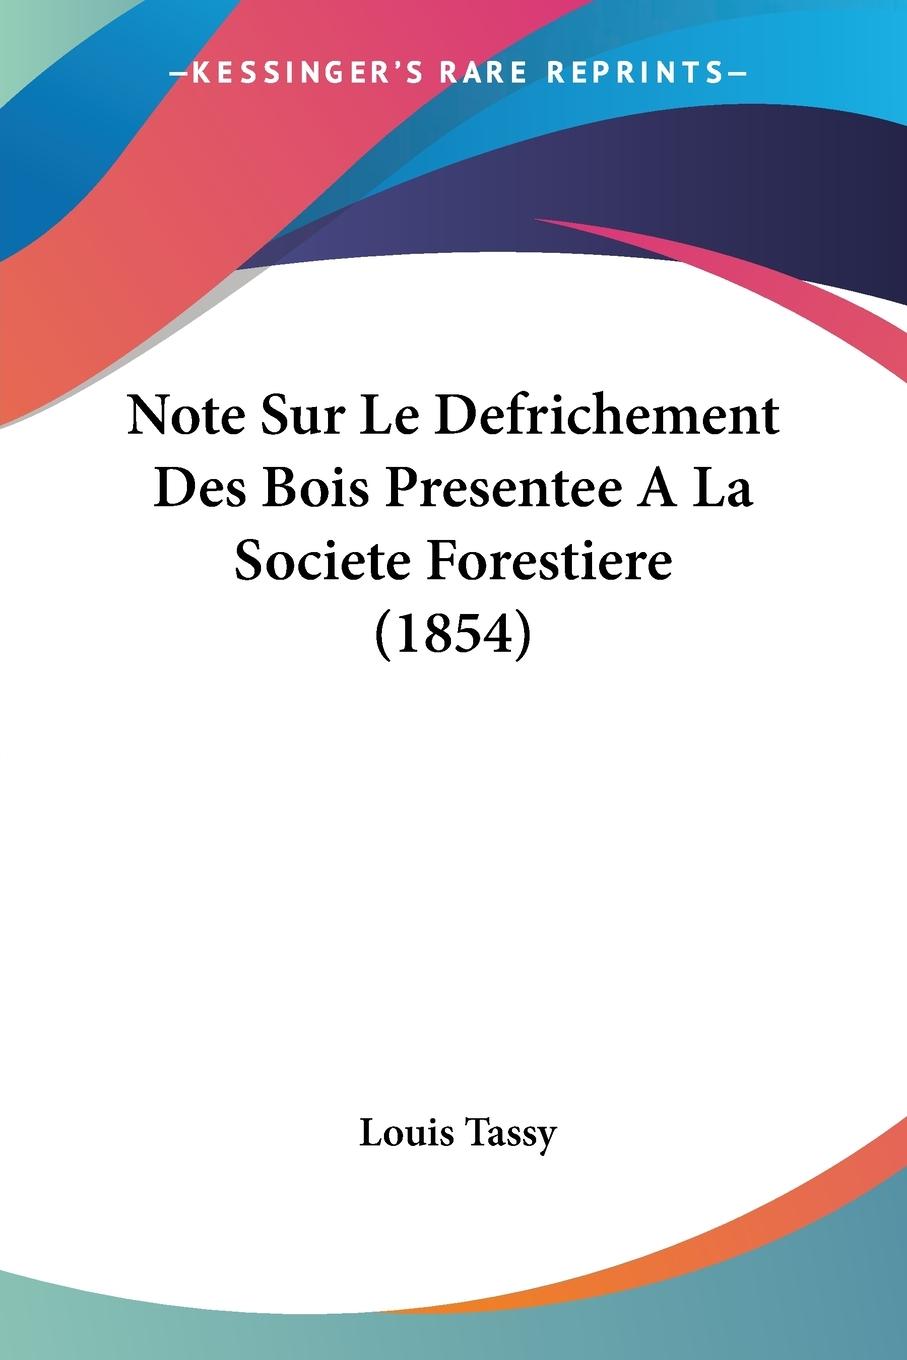 Note Sur Le Defrichement Des Bois Presentee A La Societe Forestiere (1854) - Tassy, Louis